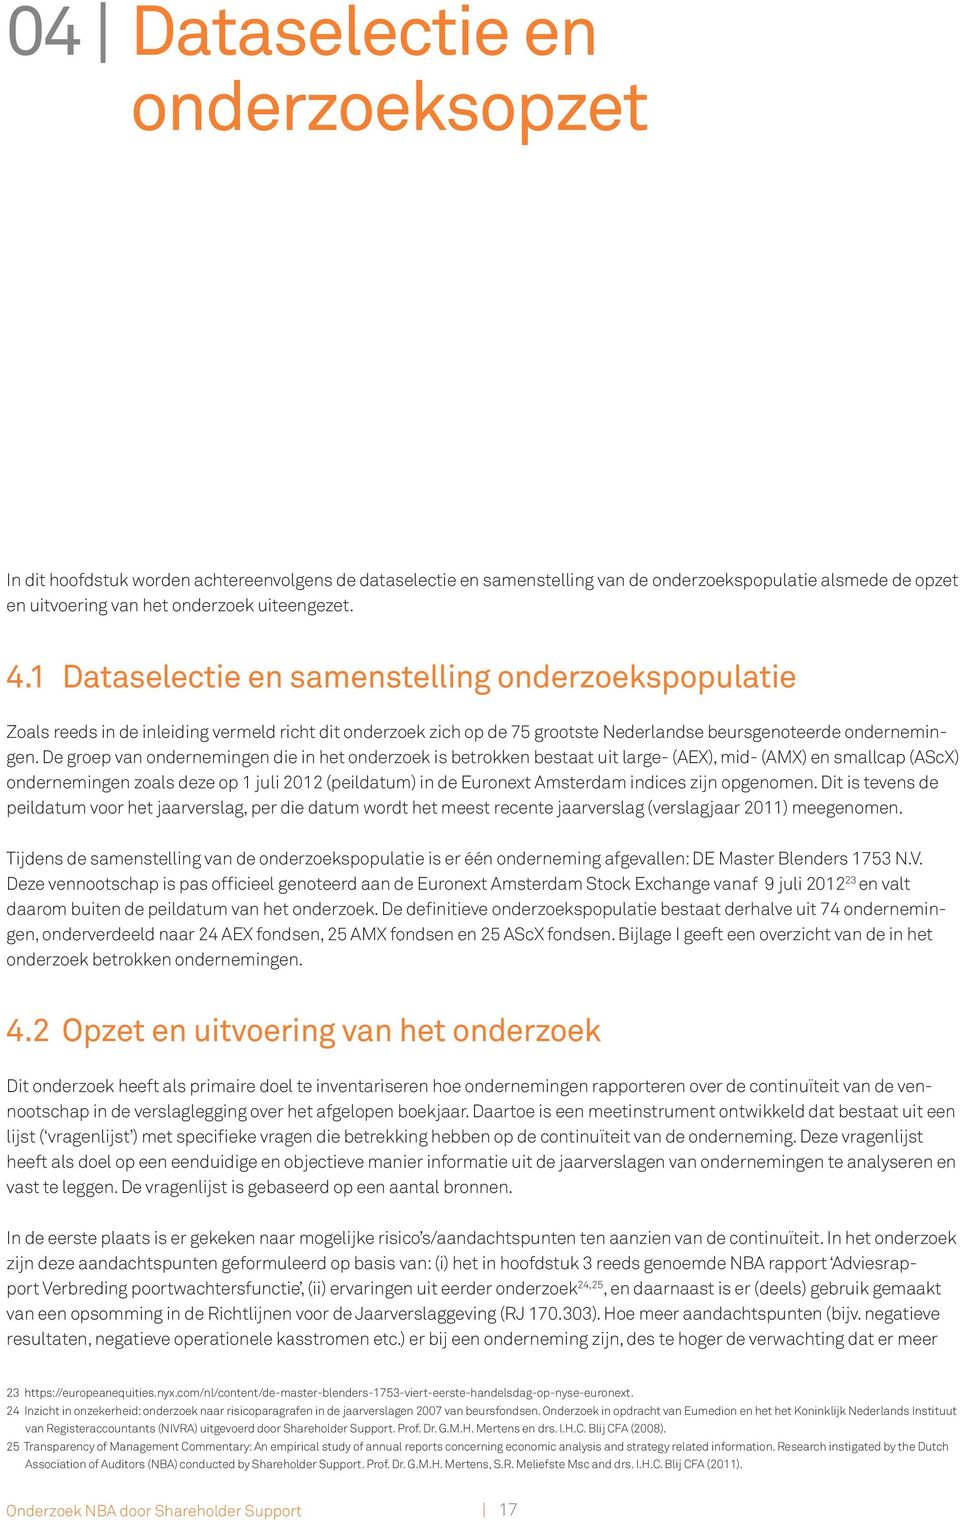 De groep van ondernemingen die in het onderzoek is betrokken bestaat uit large- (AEX), mid- (AMX) en smallcap (AScX) ondernemingen zoals deze op 1 juli 2012 (peildatum) in de Euronext Amsterdam